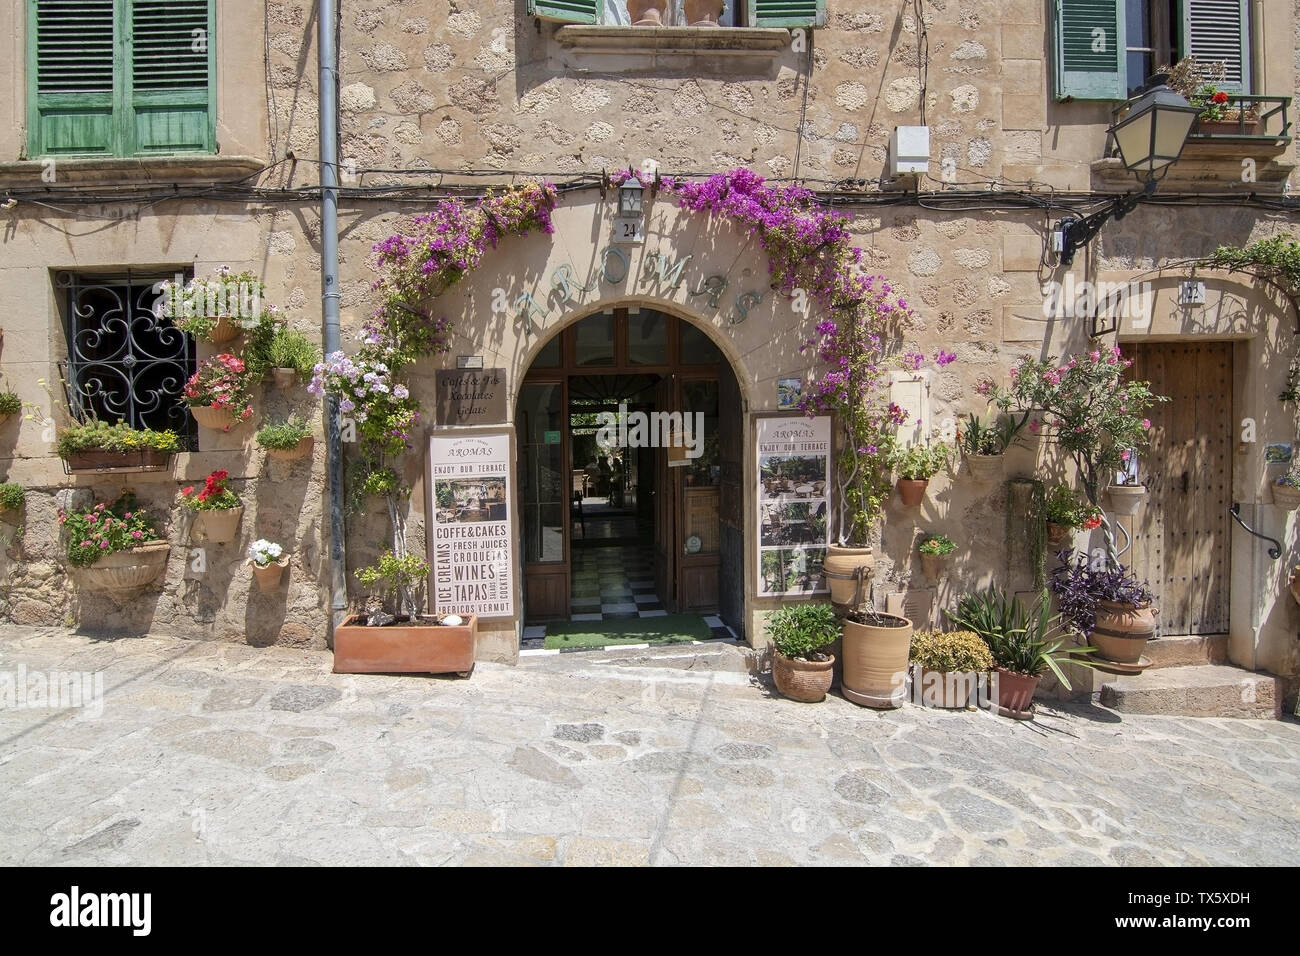 VALLDEMOSSA, Mallorca, España - 20 de junio, 2019: Flor fachada decorada en la pintoresca aldea en un soleado día de junio 20, 2019 en Valldemossa, España. Foto de stock